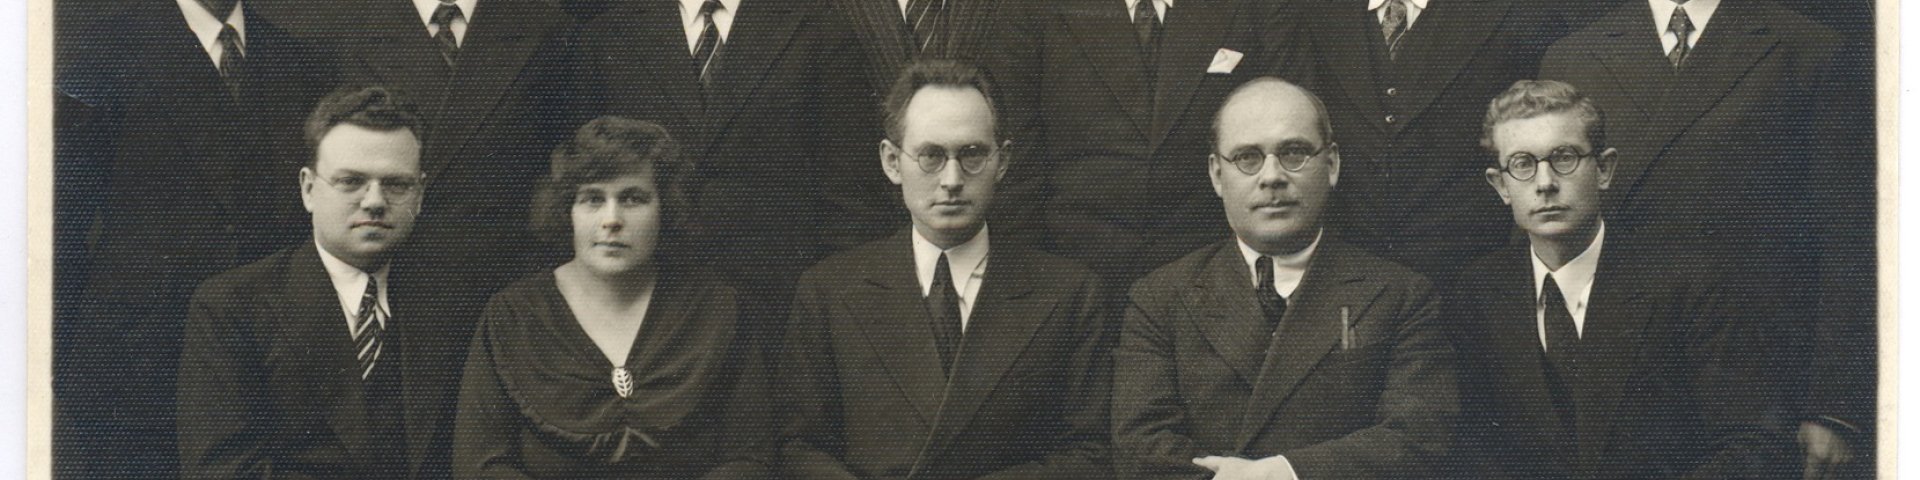 Tartu ülikooli stipendiaadid ja diploomitud edasiõppijad Tartu ülikooli aastapäeval 1. dets. 1934. a.